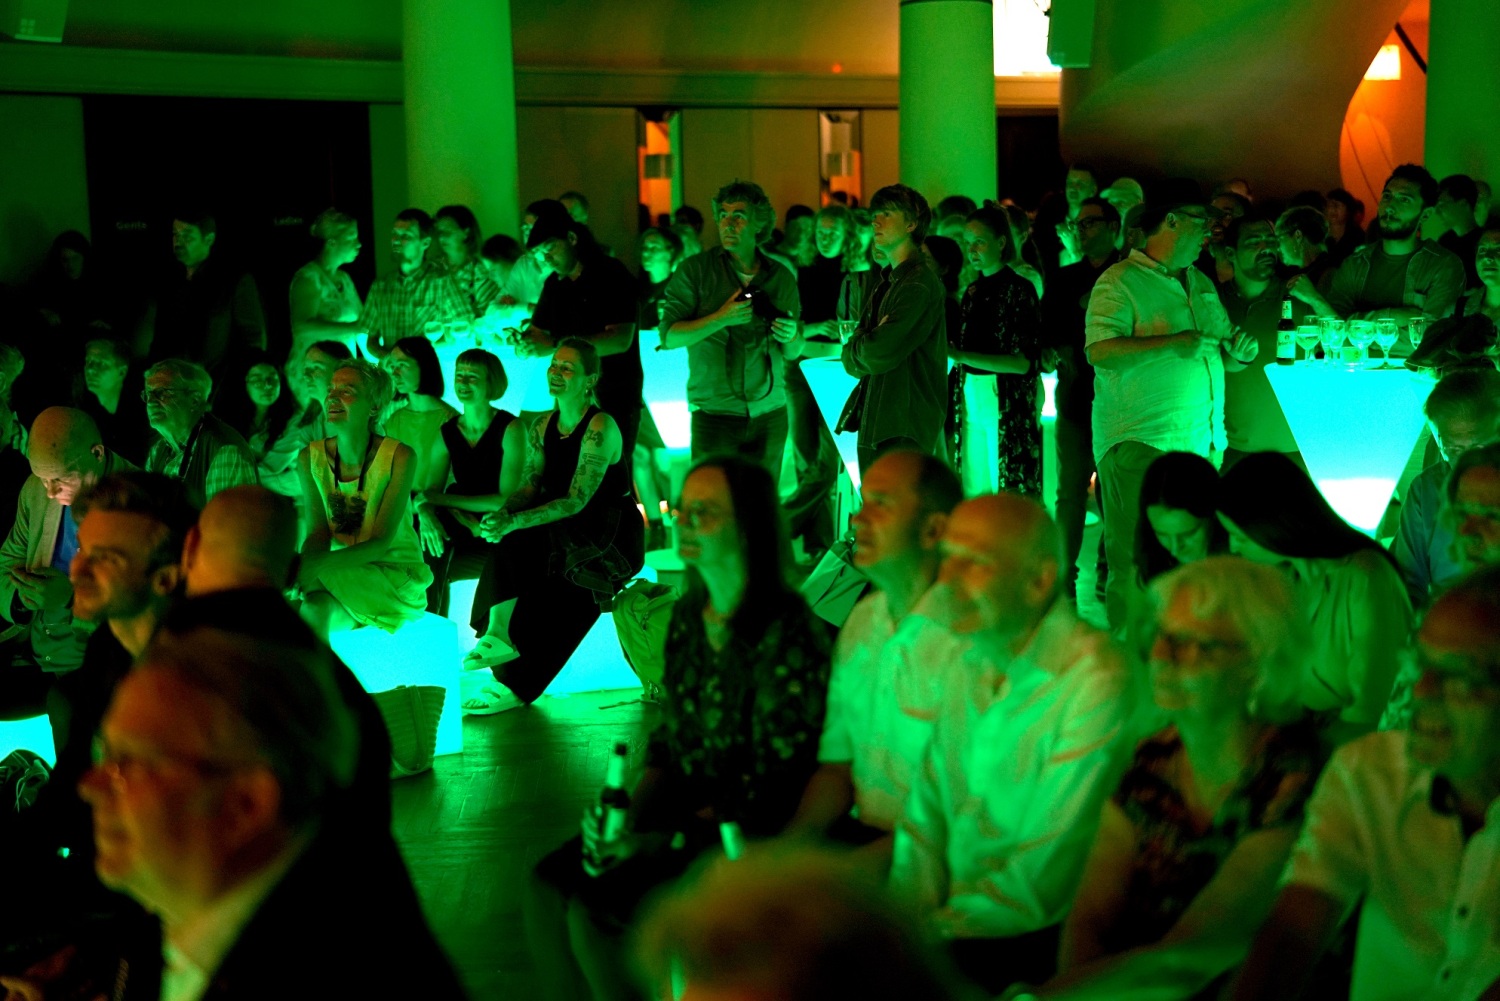 In einem dunklen grün beleuchteten Saal sitzen und stehen Menschen und schauen in eine Richtung.